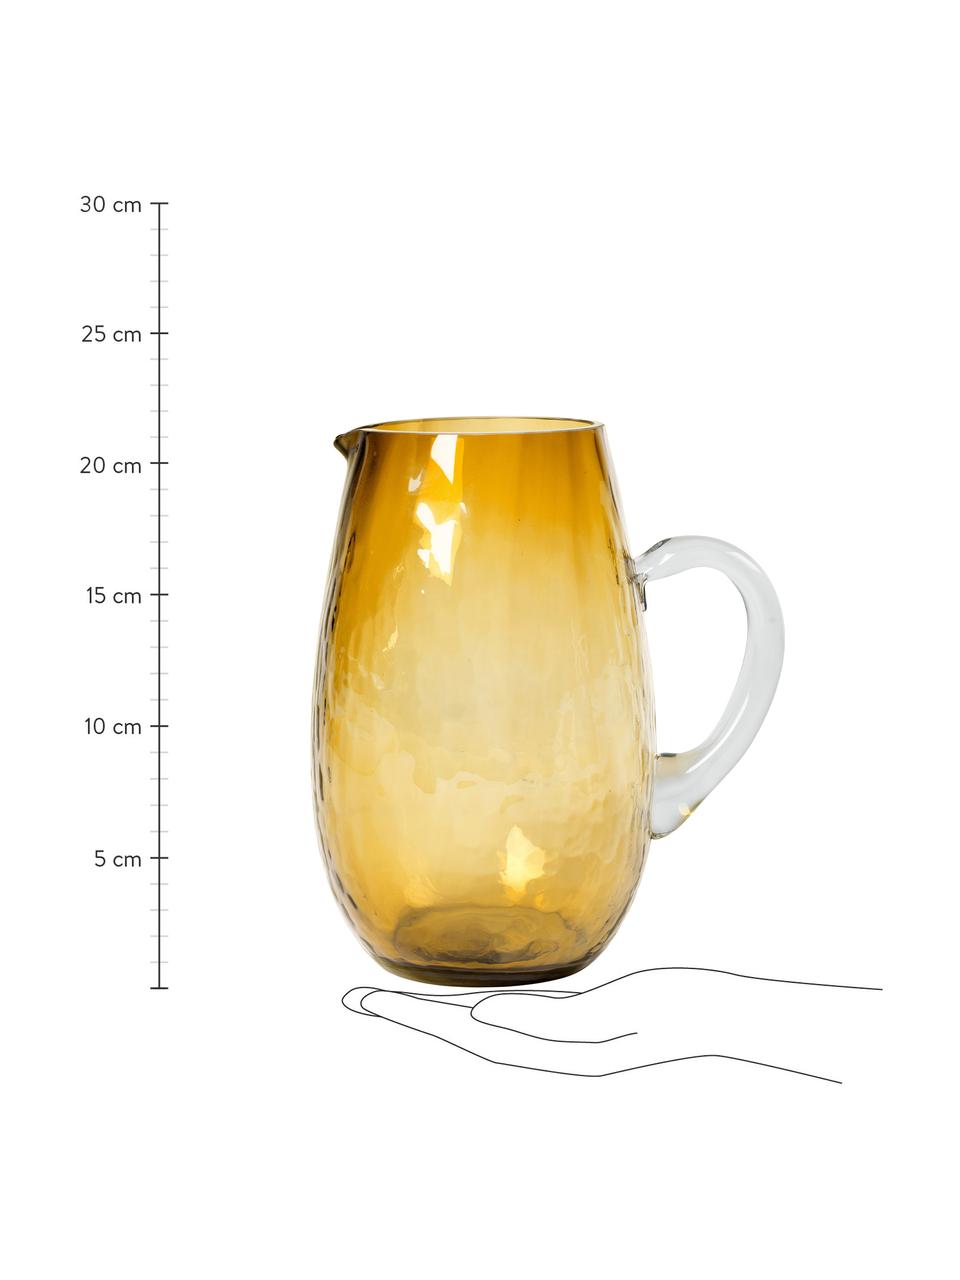 Großer mundgeblasener Krug Hammered mit gehämmerter Oberfläche, 2 L, Glas, Bernsteinfarben, Ø 14 x H 22 cm, 2 L